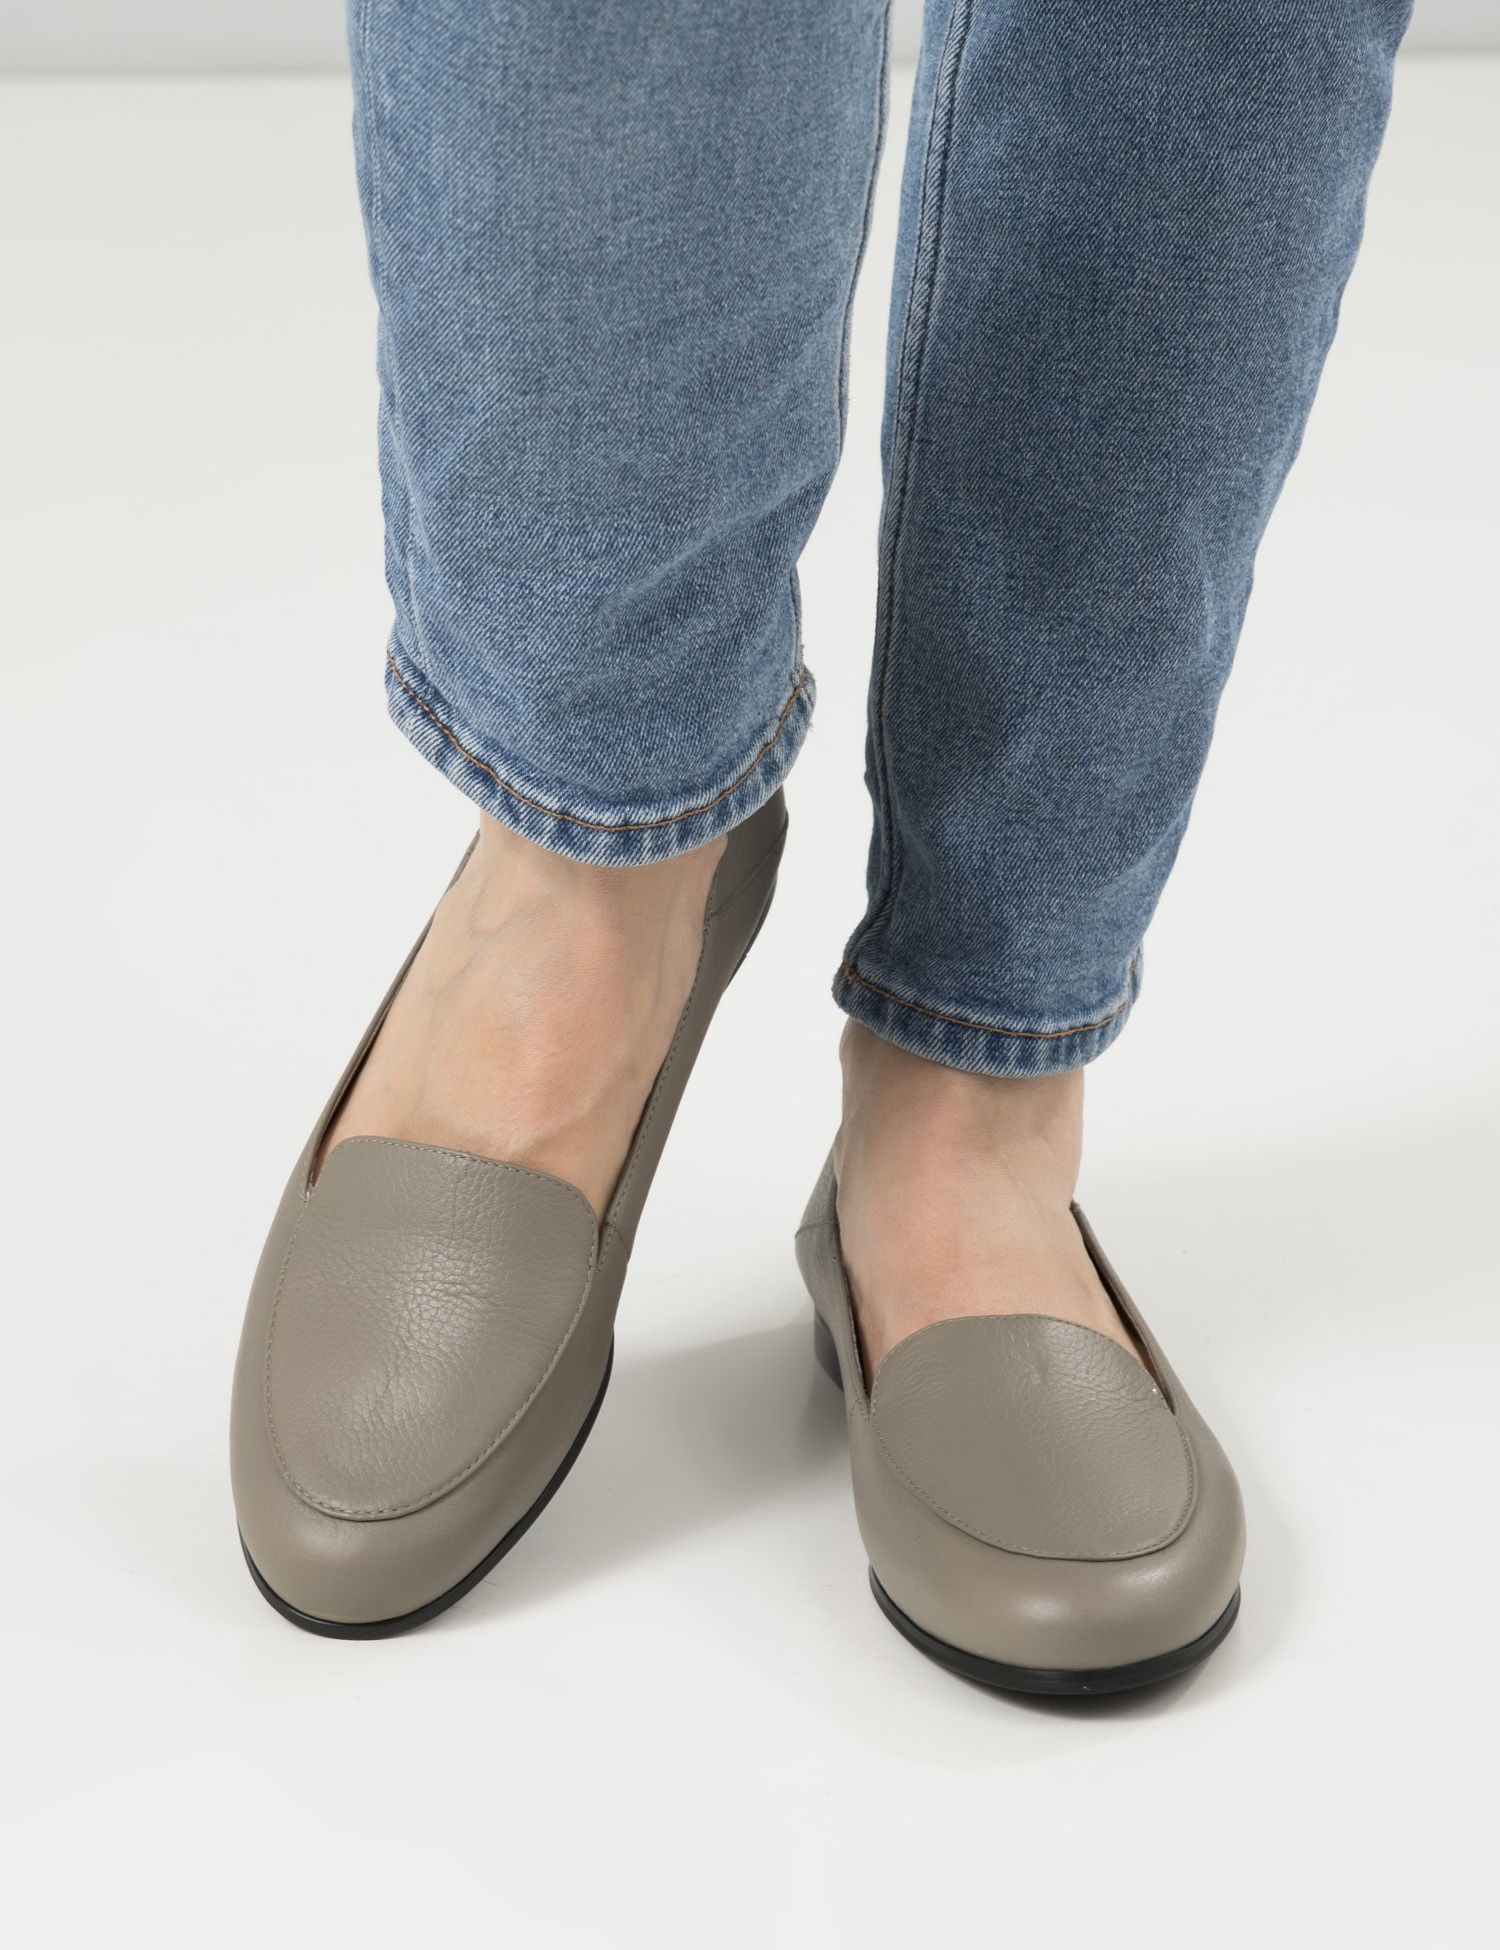 Картинка Жіночі бежеві шкіряні туфлі